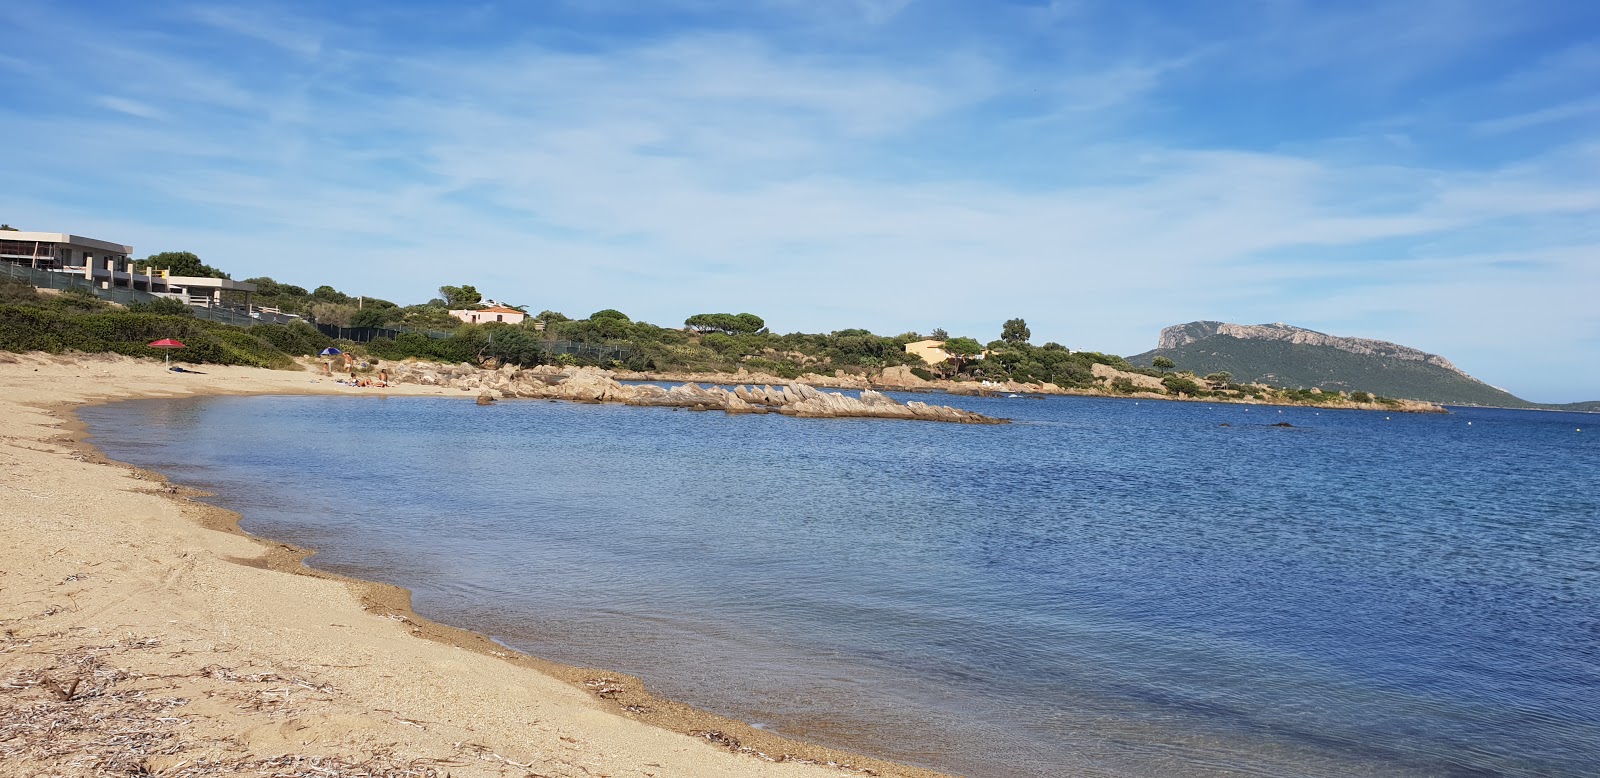 Foto av Spiaggia S'abba e sa Pedra med liten vik